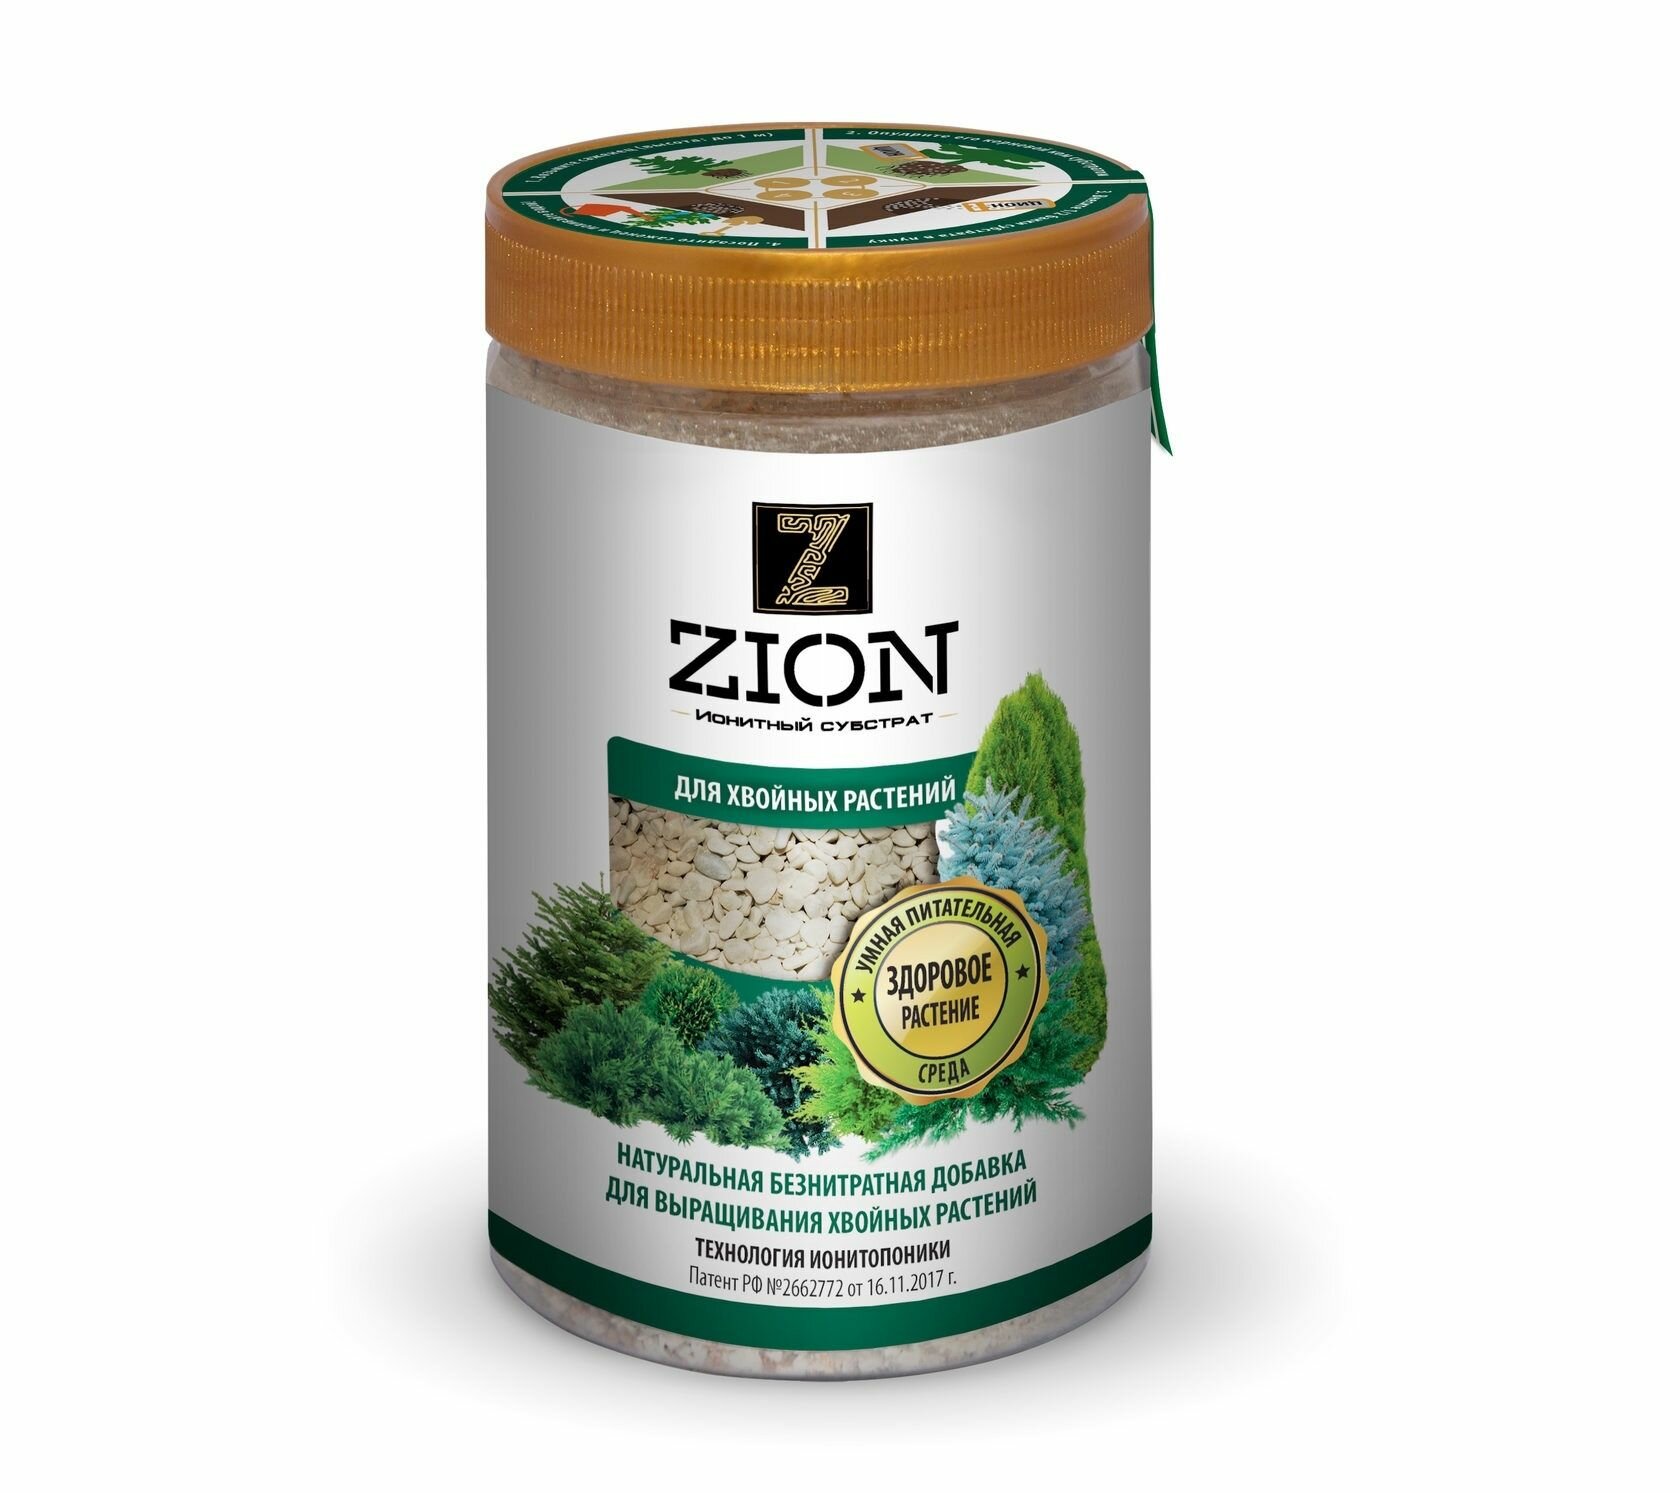 Ионитный субстрат для выращивания хвойных растений цион (ZION) 700 г.